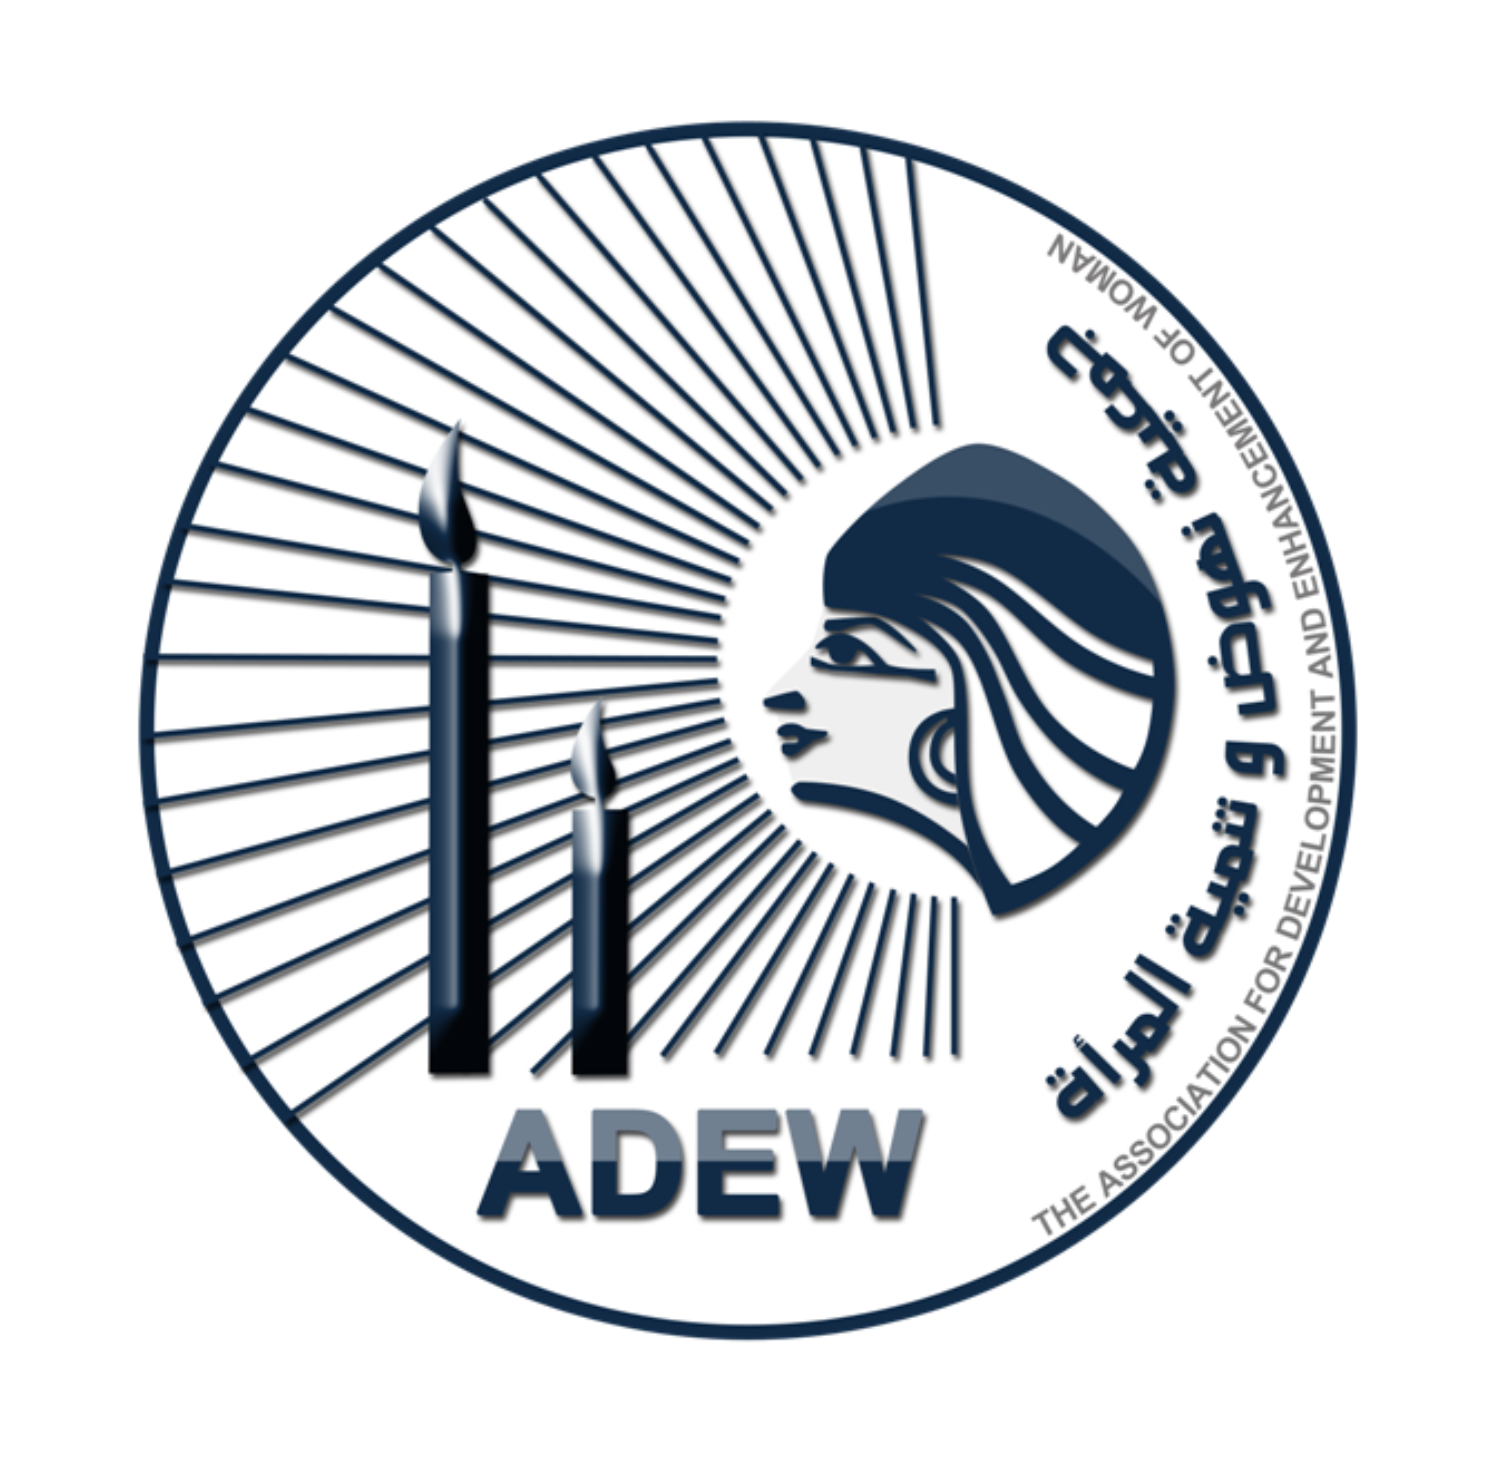 The Association for the Development & Enhancement of Women (ADEW)